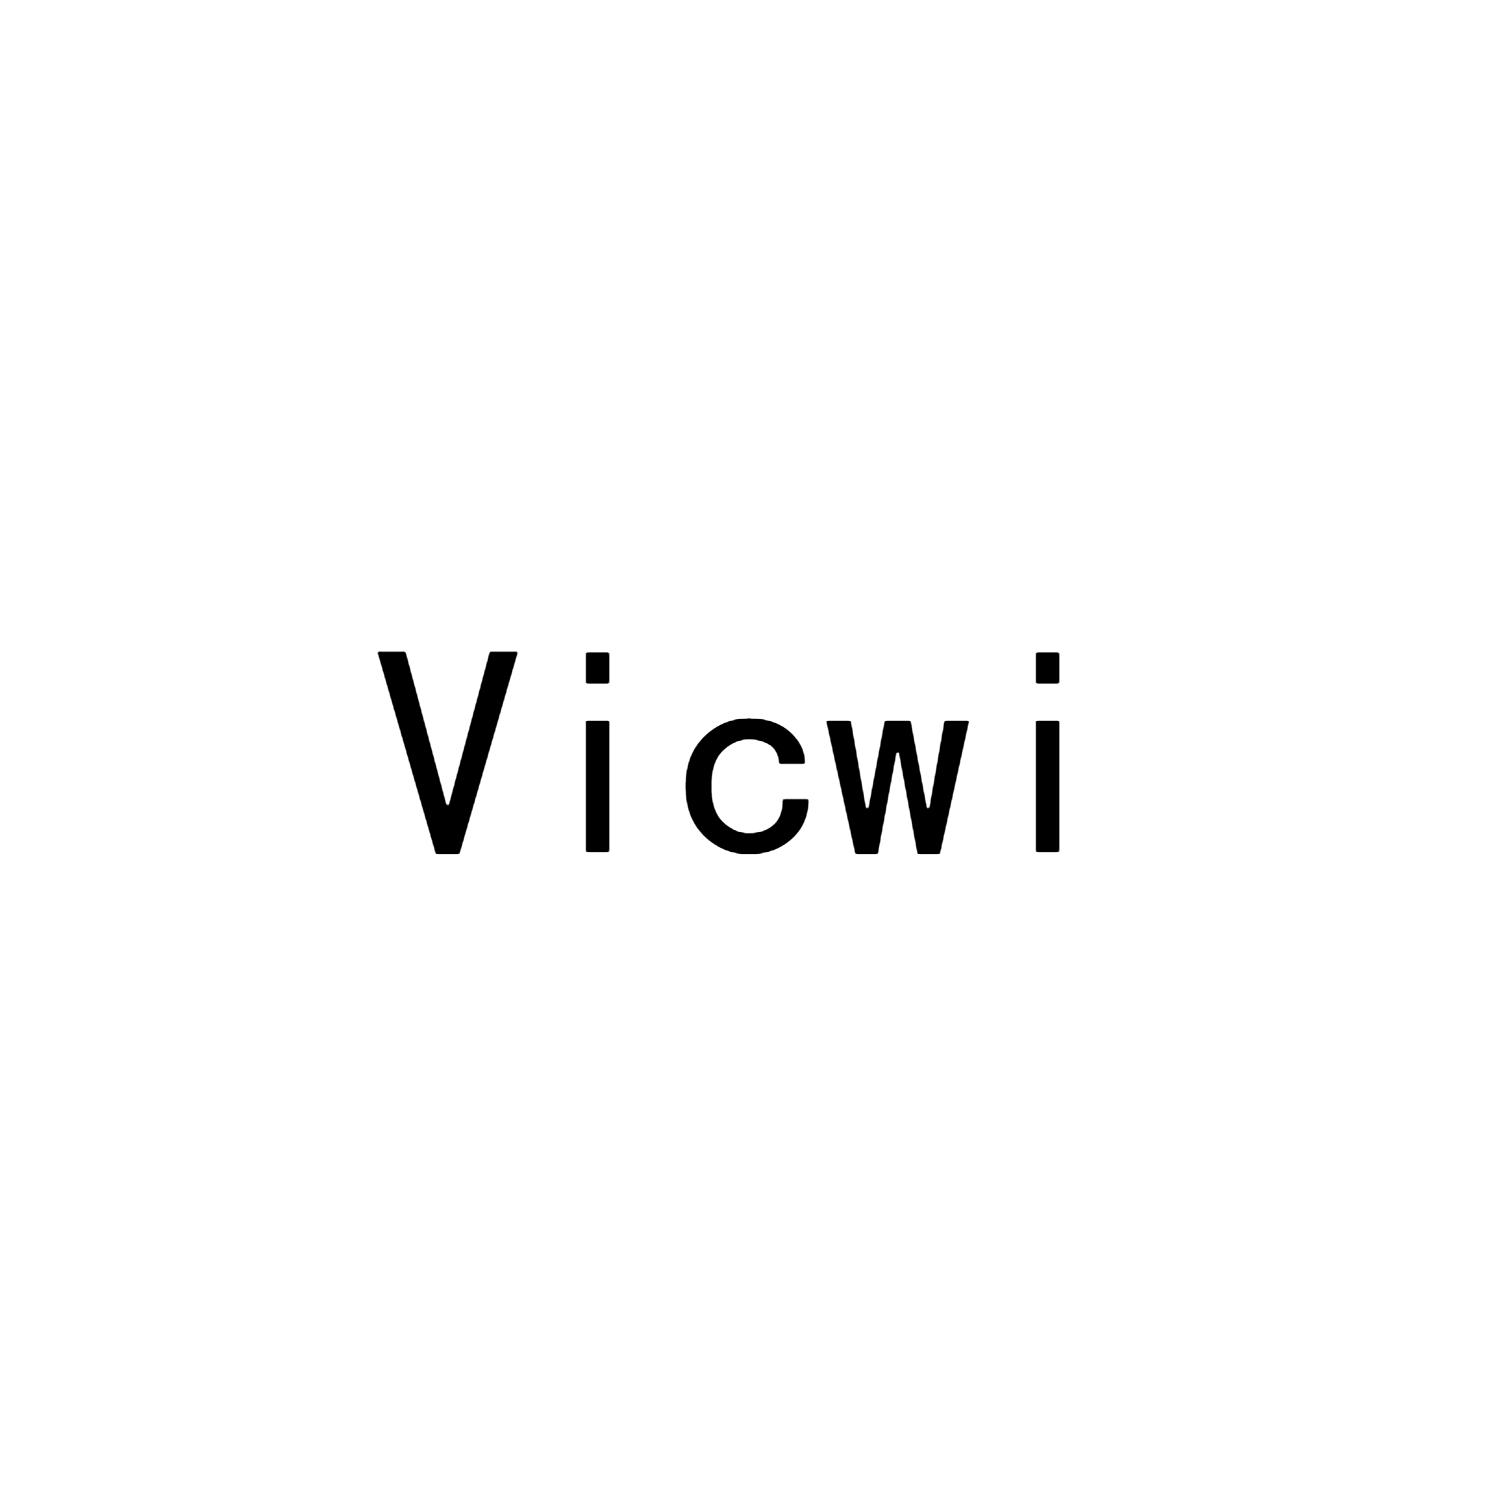 VICWI